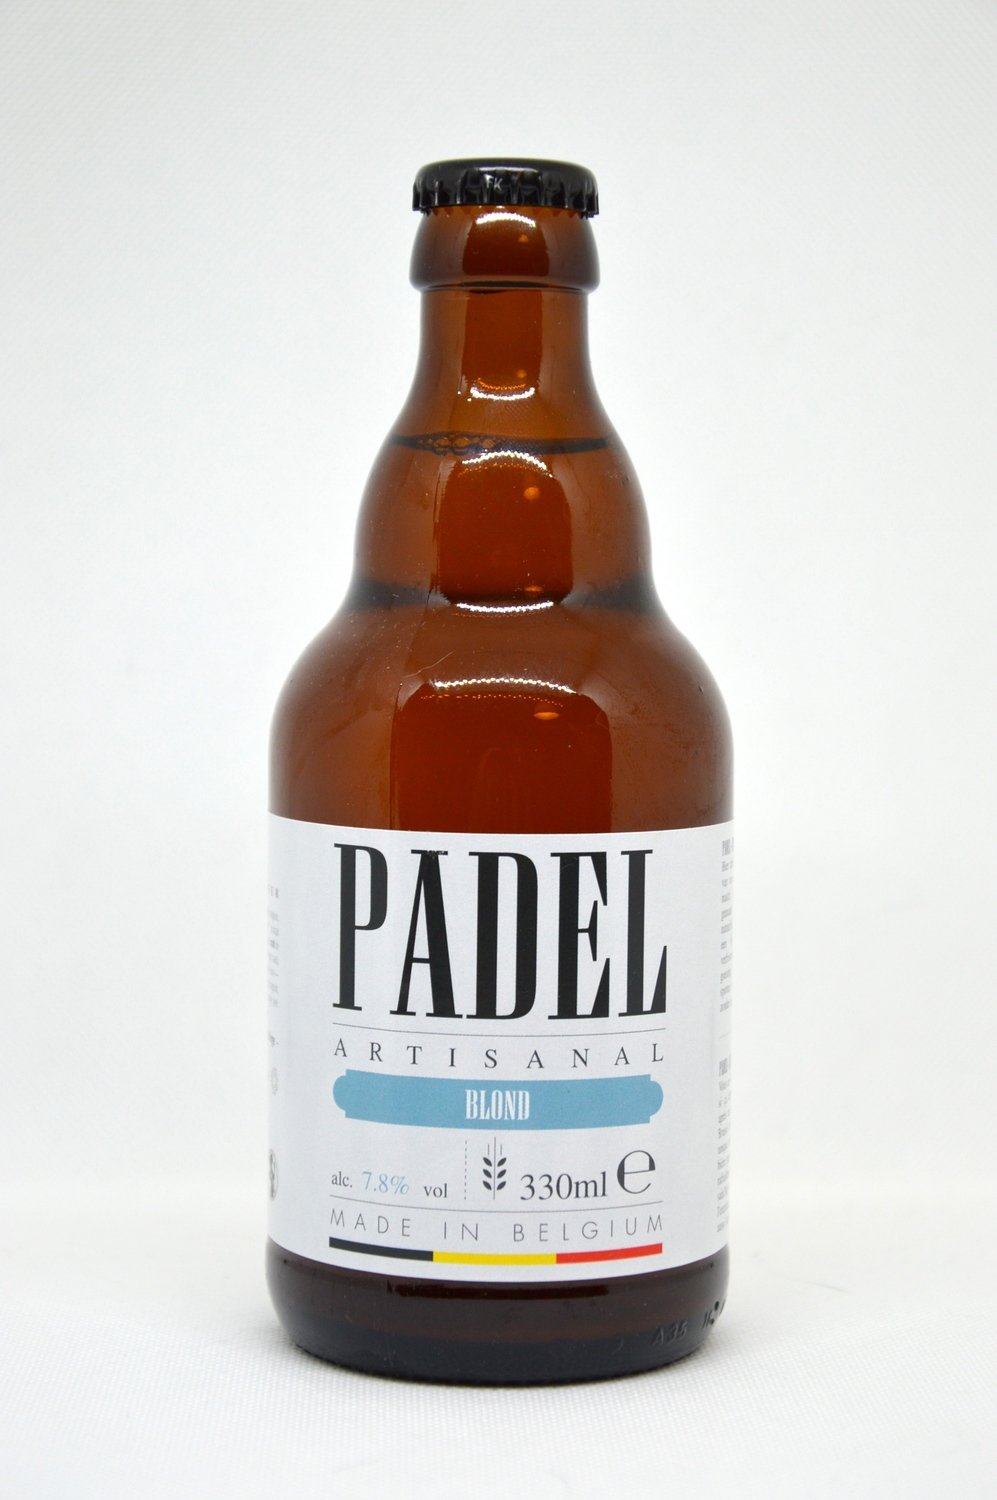 Padel Beer 20 flesjes + 2 glazen